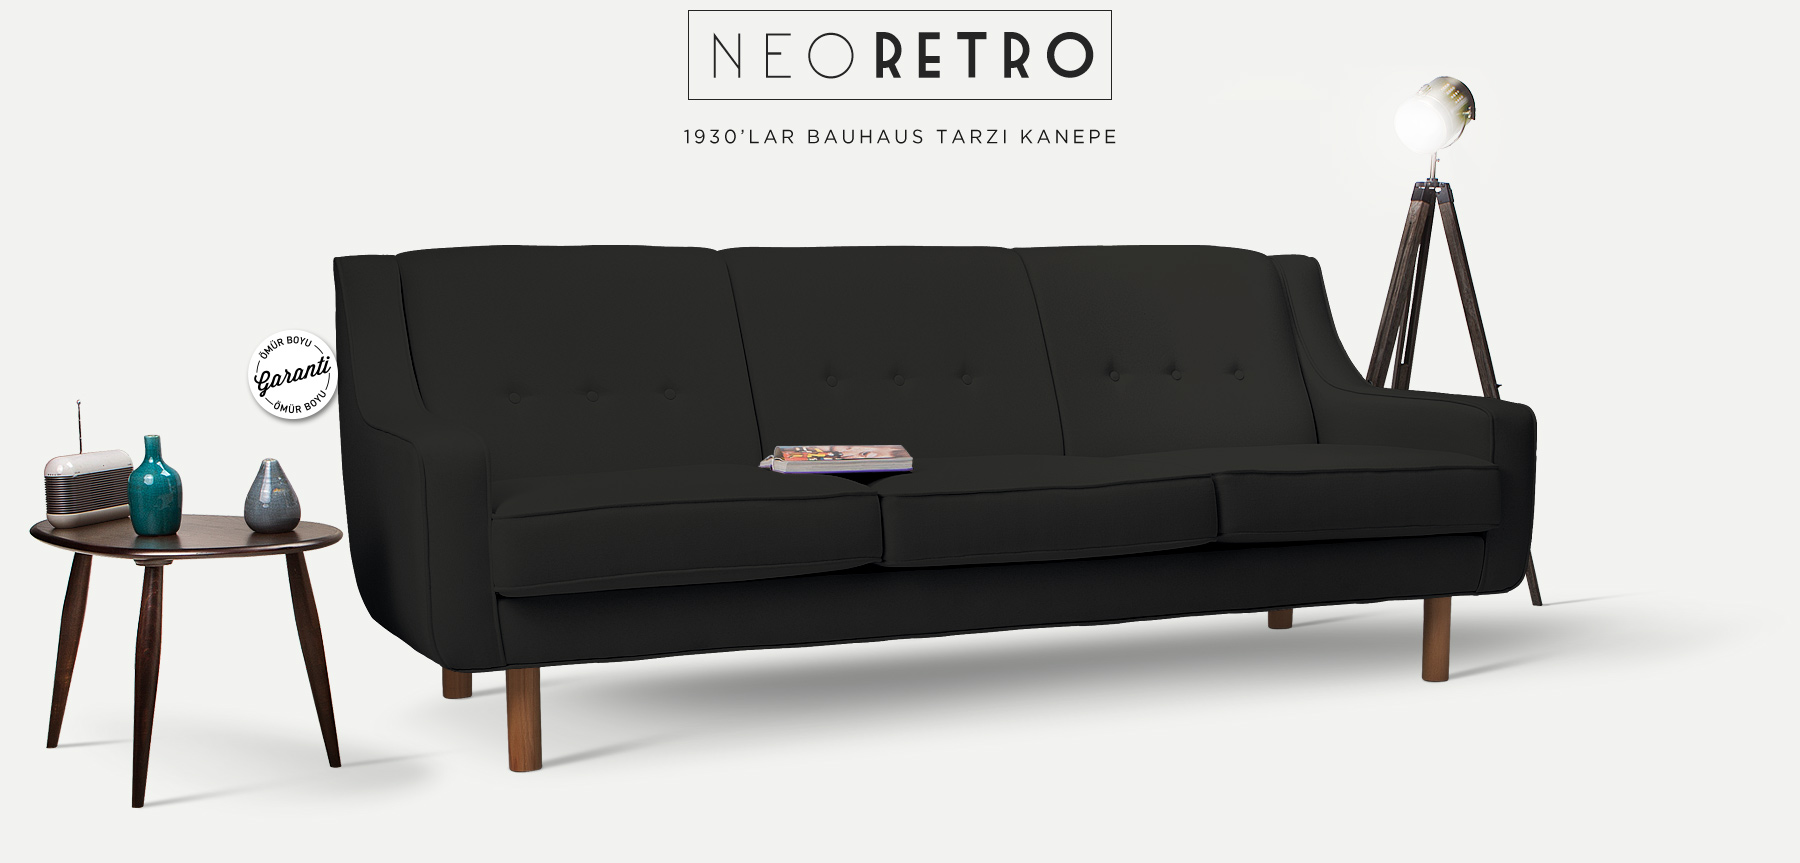 neoretro™ üçlü siyah kanepe'in resmi